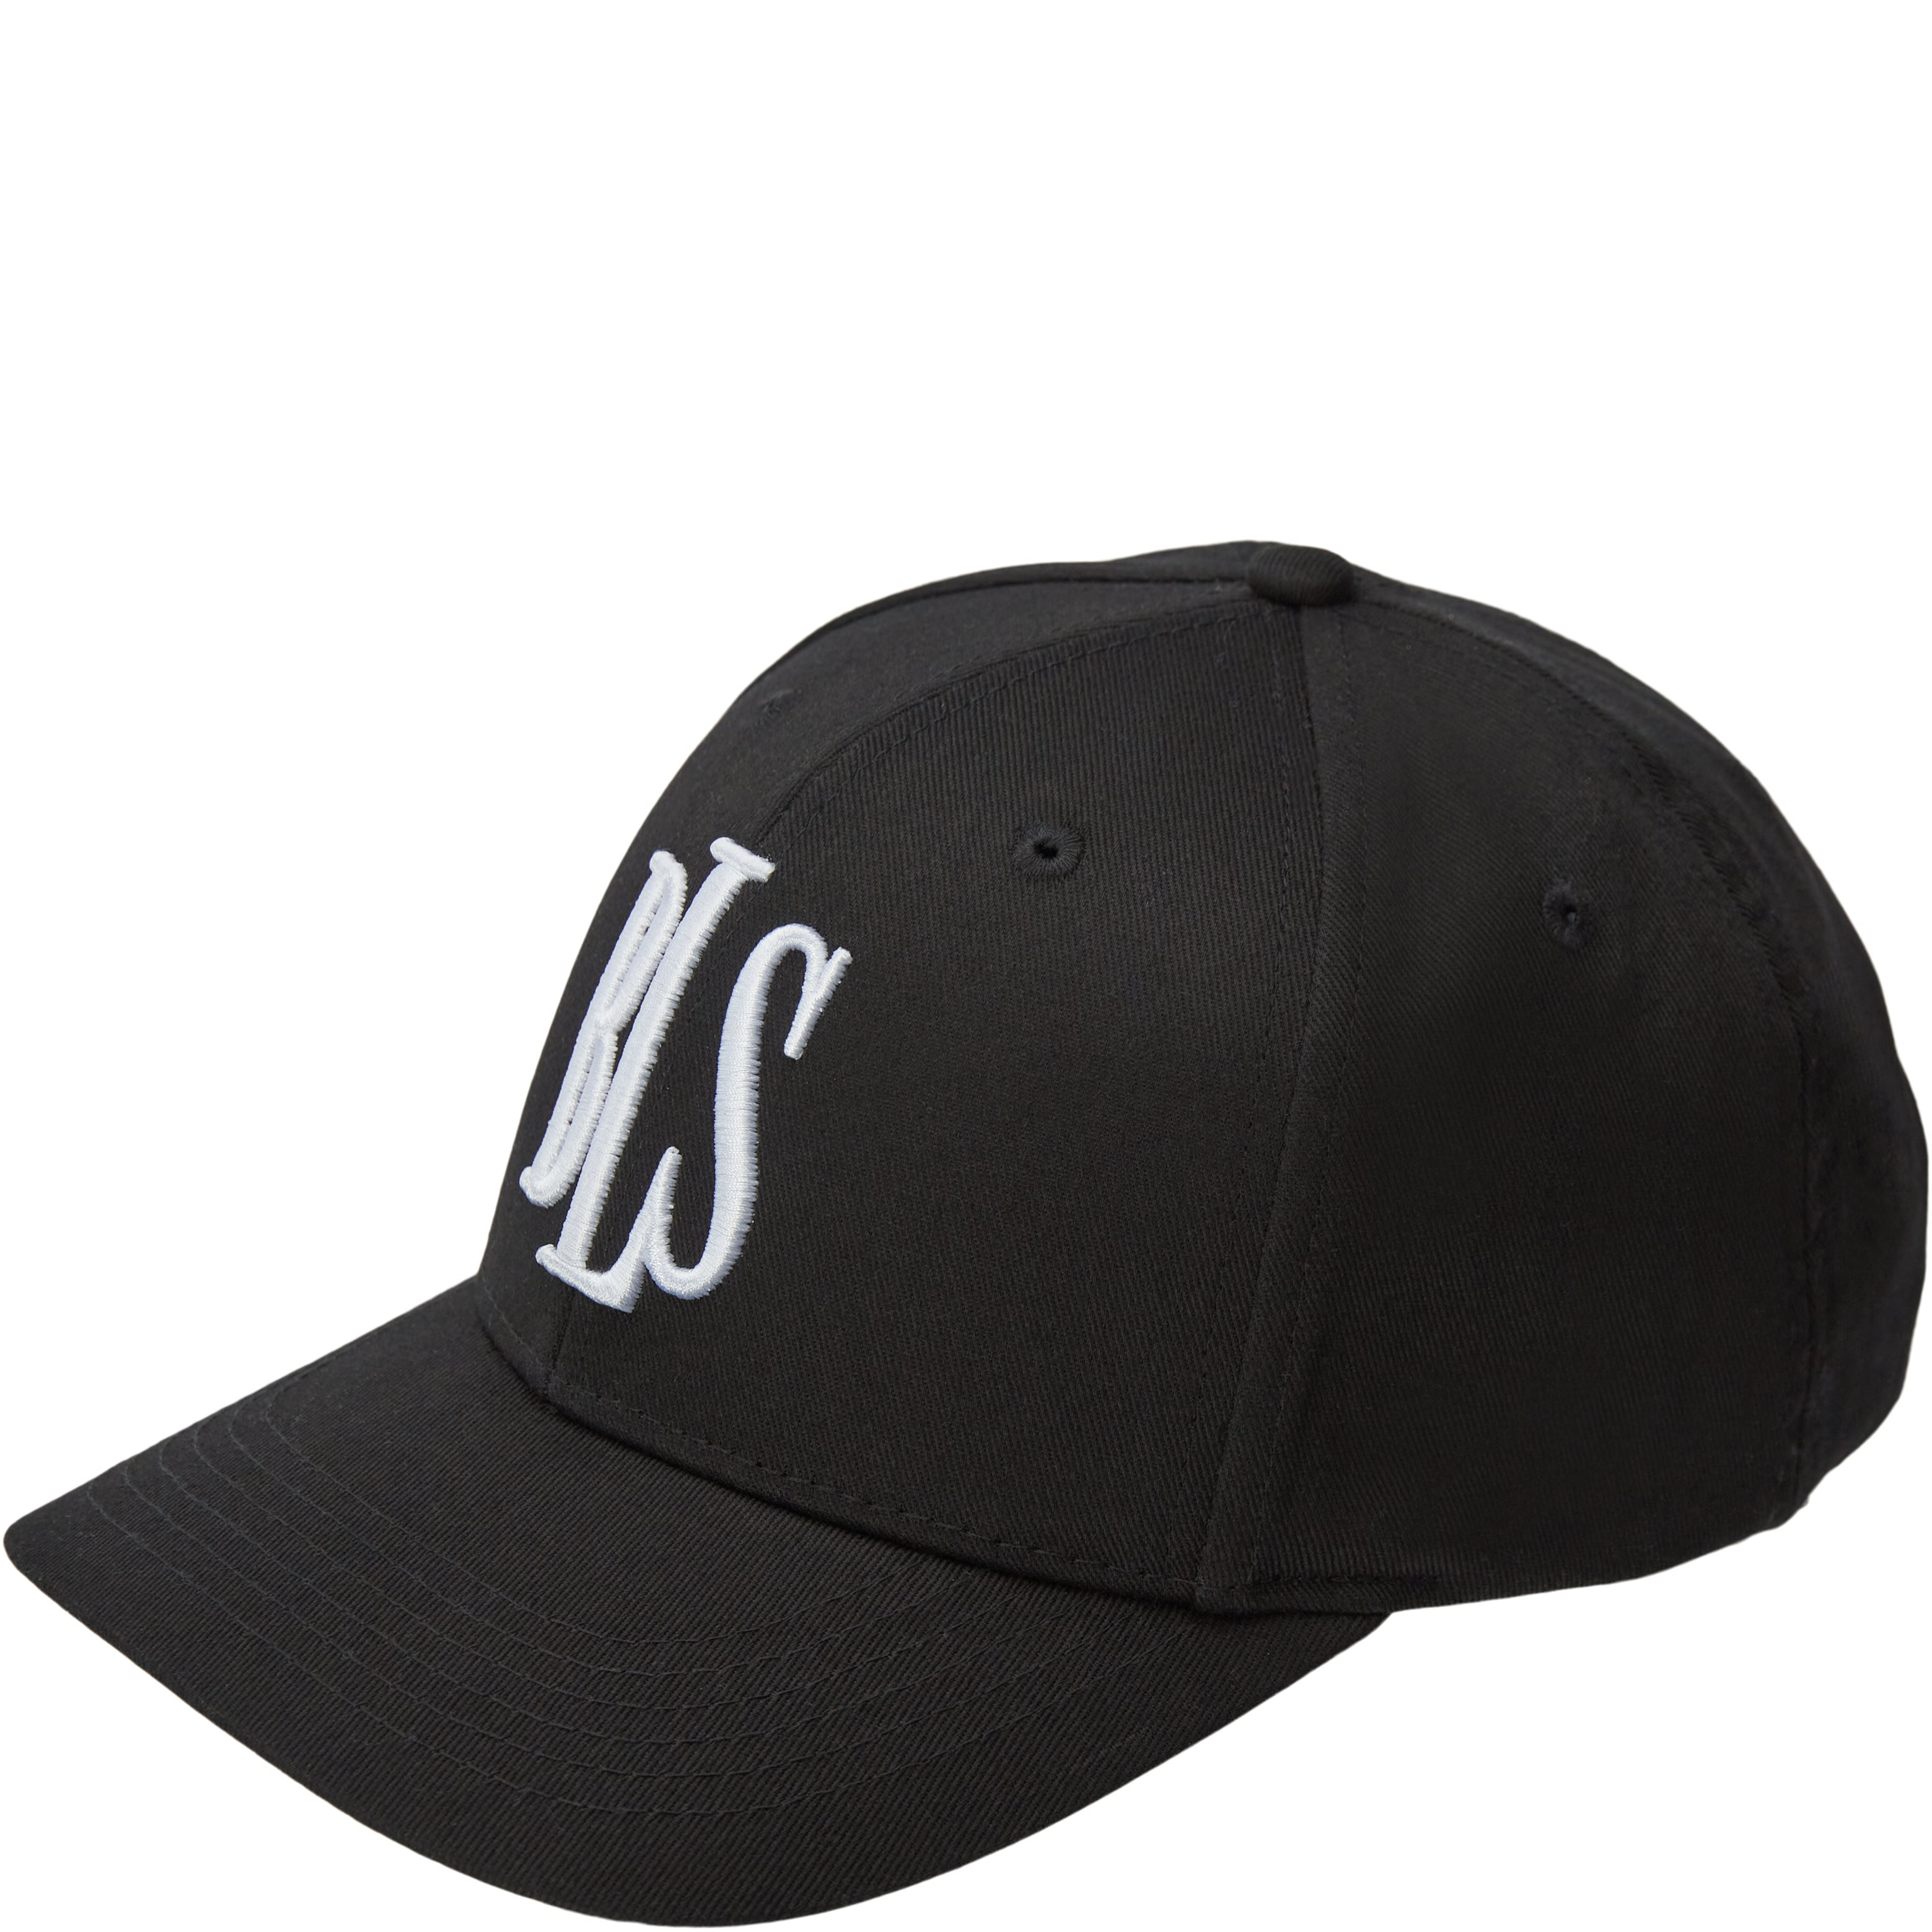 BLS Caps CLASSIC BASEBALL CAP 99101 Black